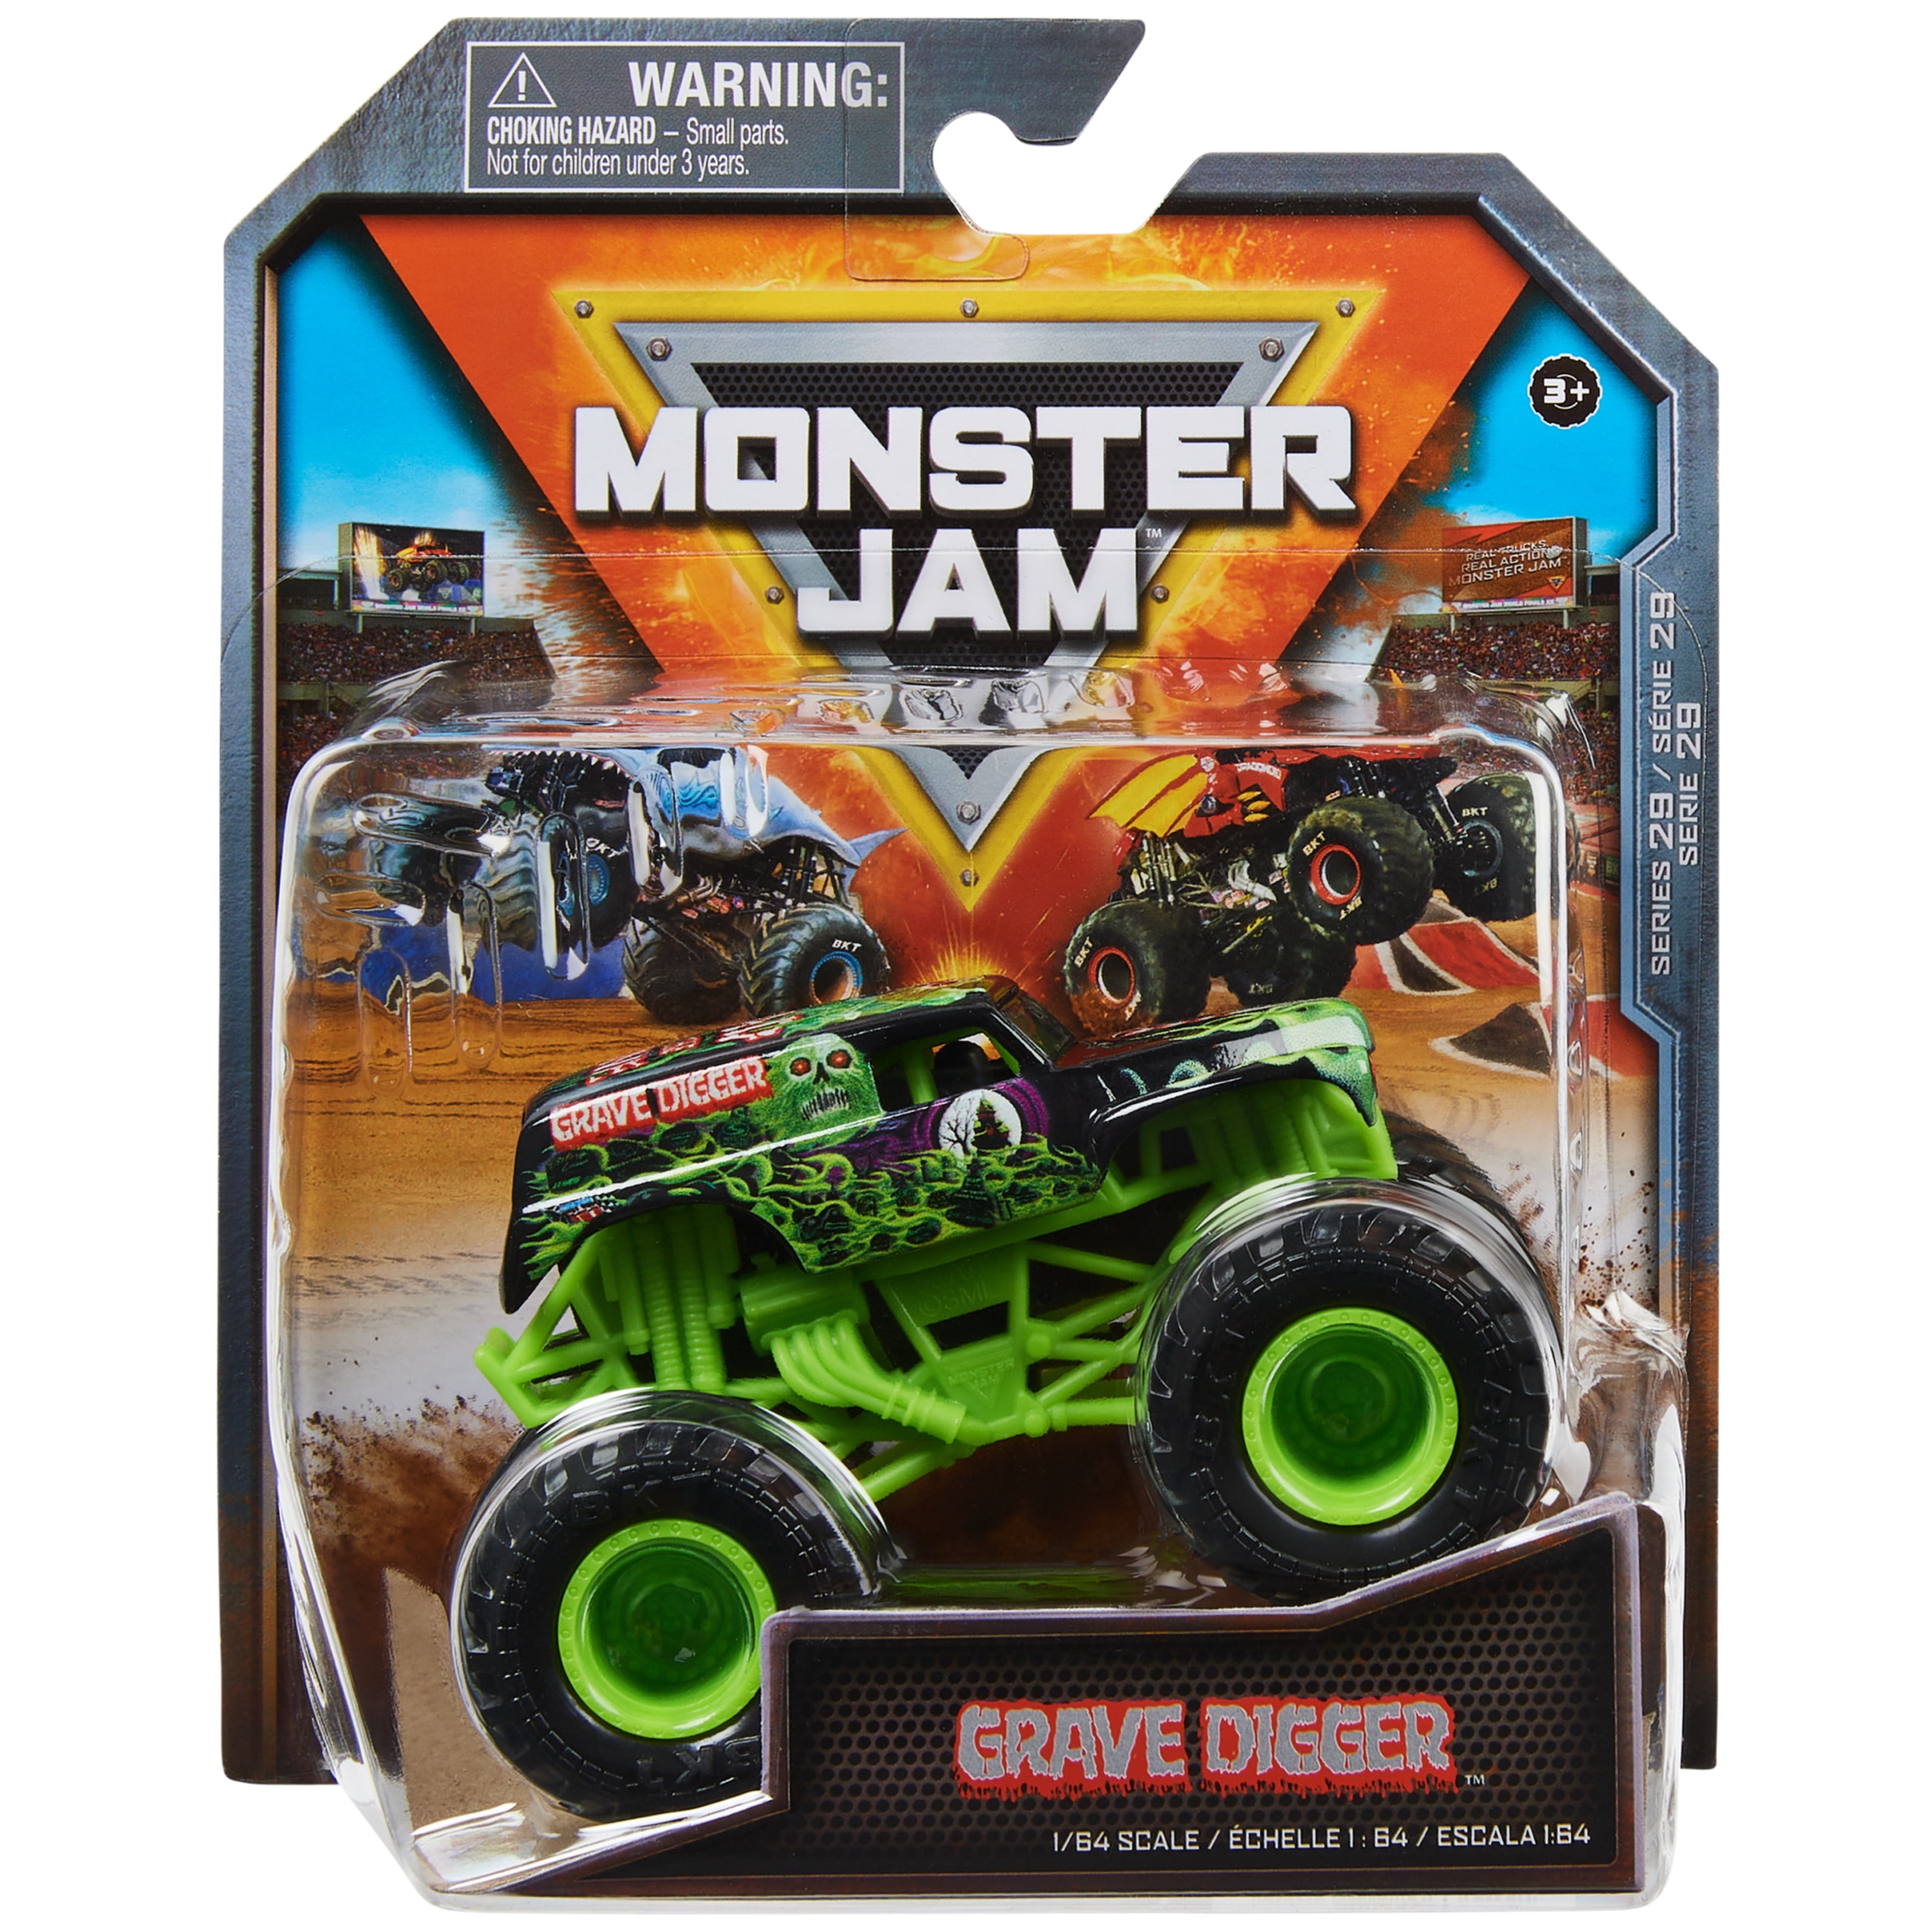 Spin Master Monster Jam Remote Control Monster Truck, Grave Digger 1:2